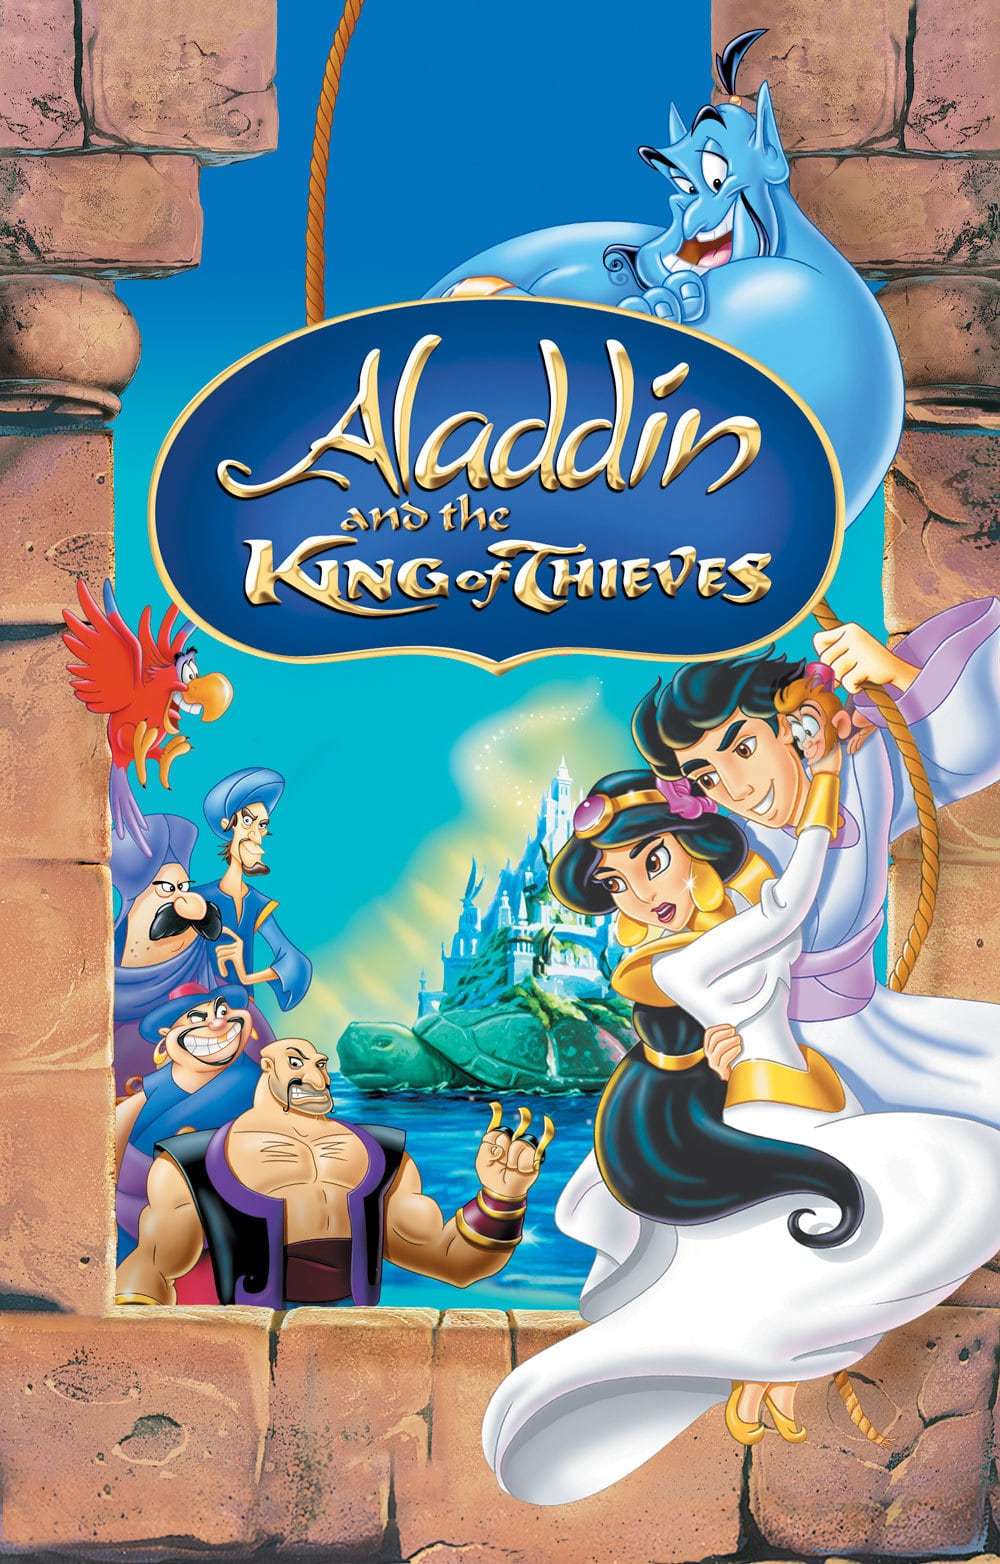 تحميل فيلم علاء الدين وملك اللصوص Aladdin and the King of Thieves 1996 مدبلج بالعربية الفصحى